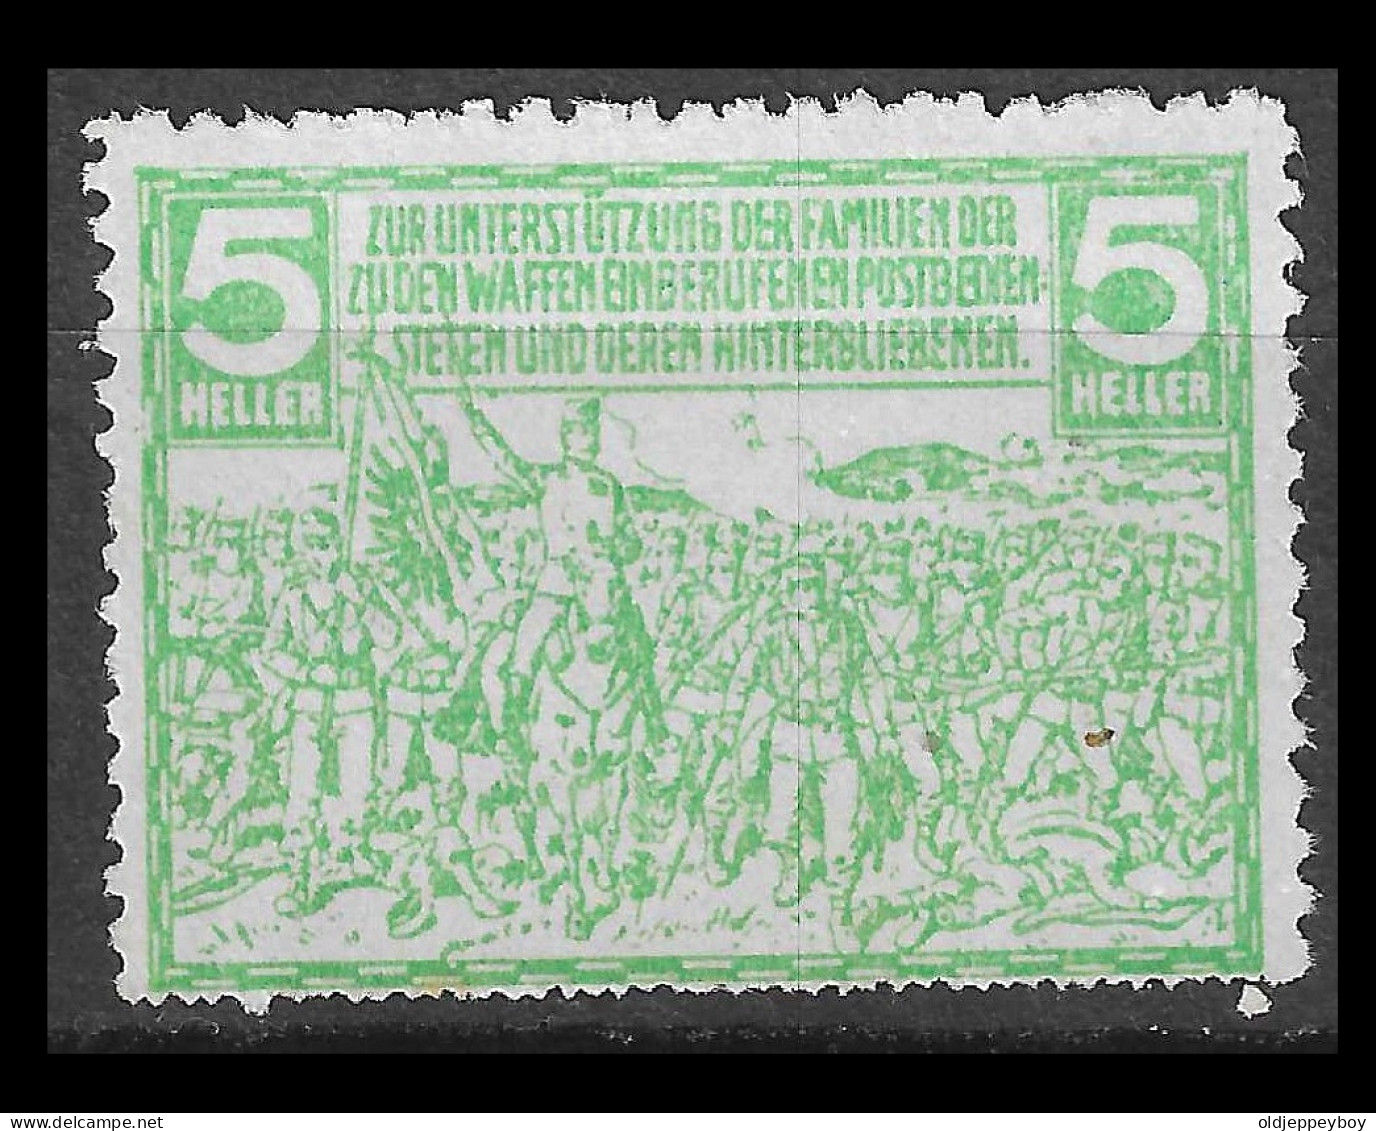 VIGNETTE CINDERELLA Germany AUSTRIA  MILITARIA WW1 1914 - 1918 ZUR UNTERSTUTZUNG DER FAMILIEN DER SUDEN WAFFEN - Croix-Rouge